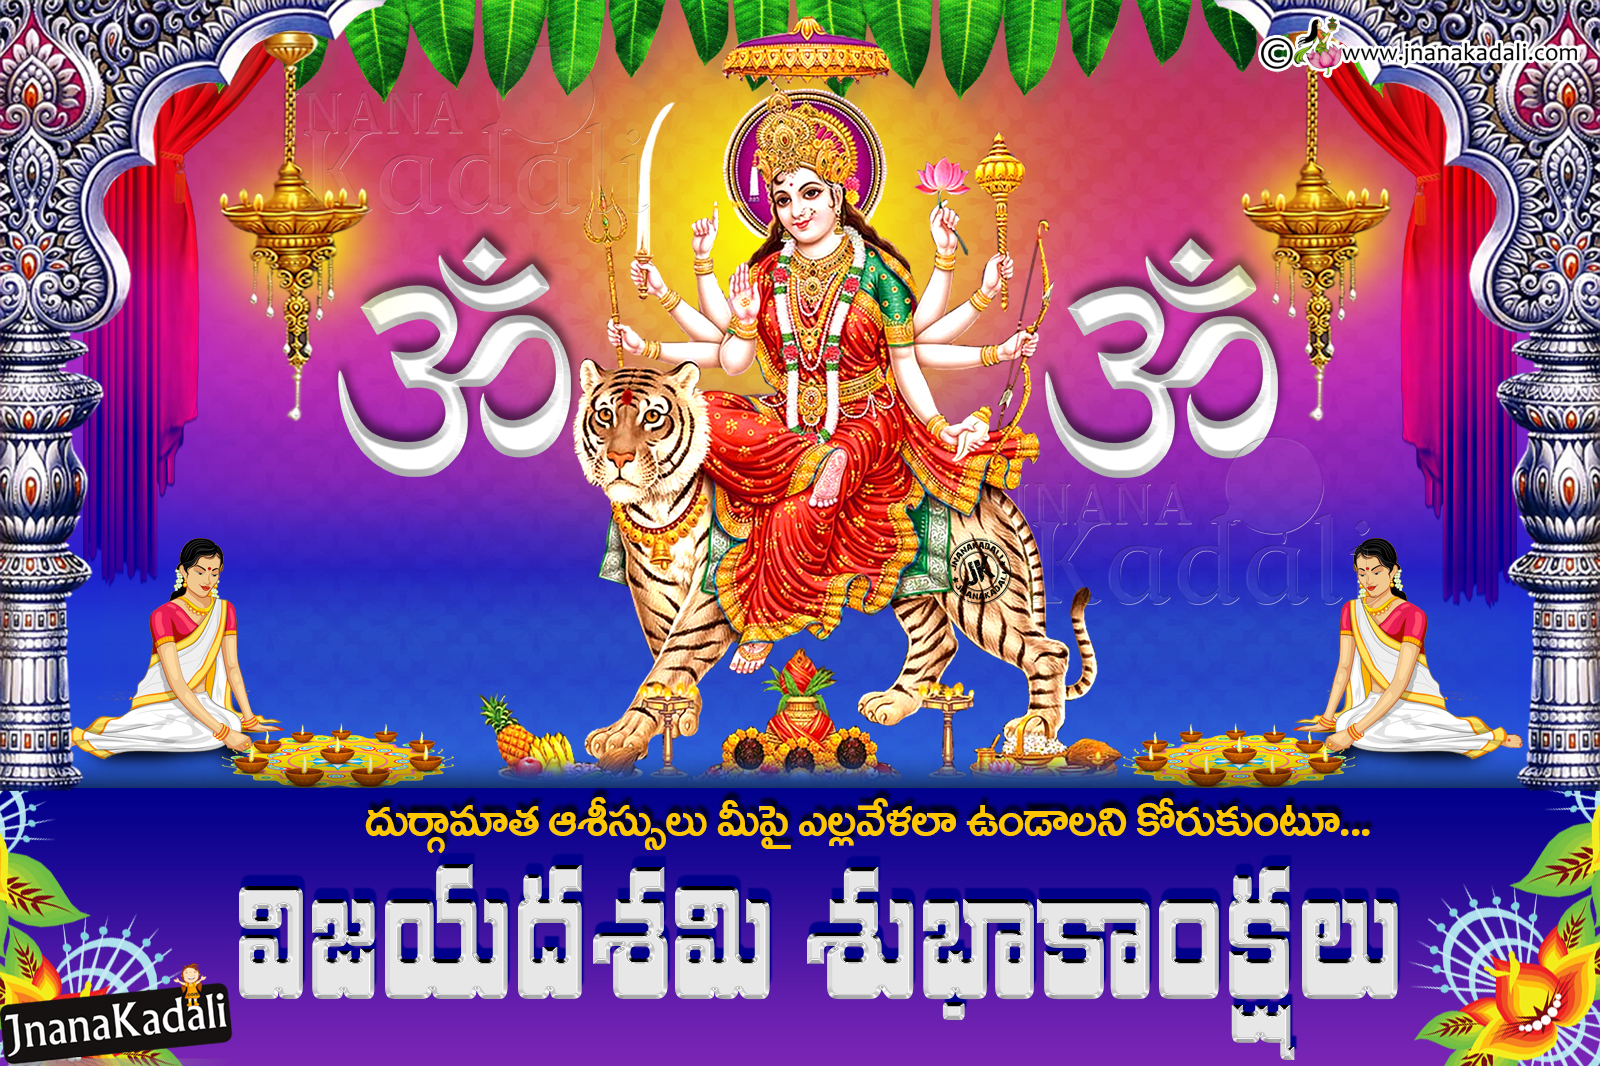 2019 Vijayadasami Greetings HD Wallpapers Free Download in Telugu ...